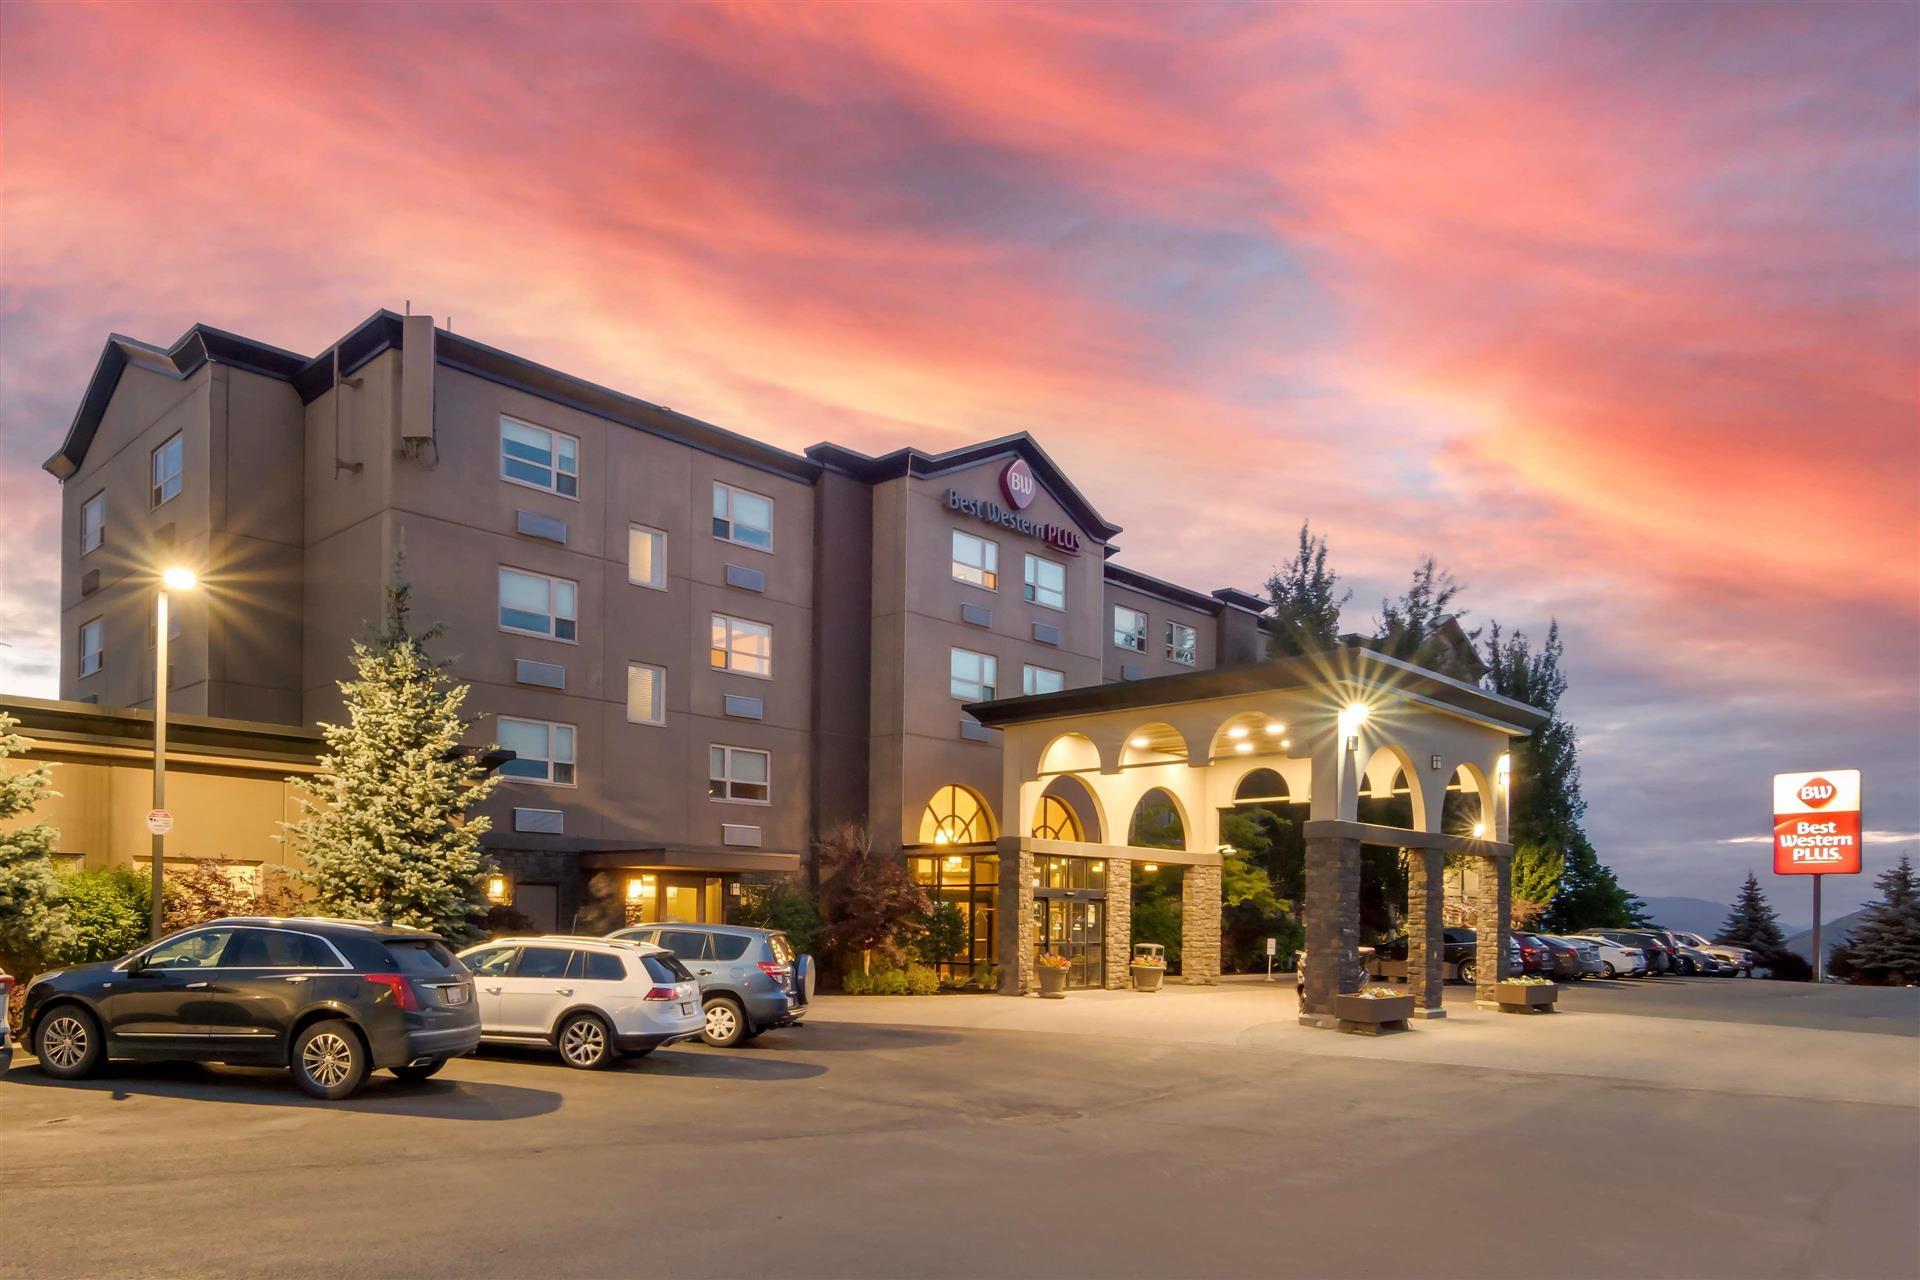 Best Western Plus Kamloops Hotel in Kamloops, BC